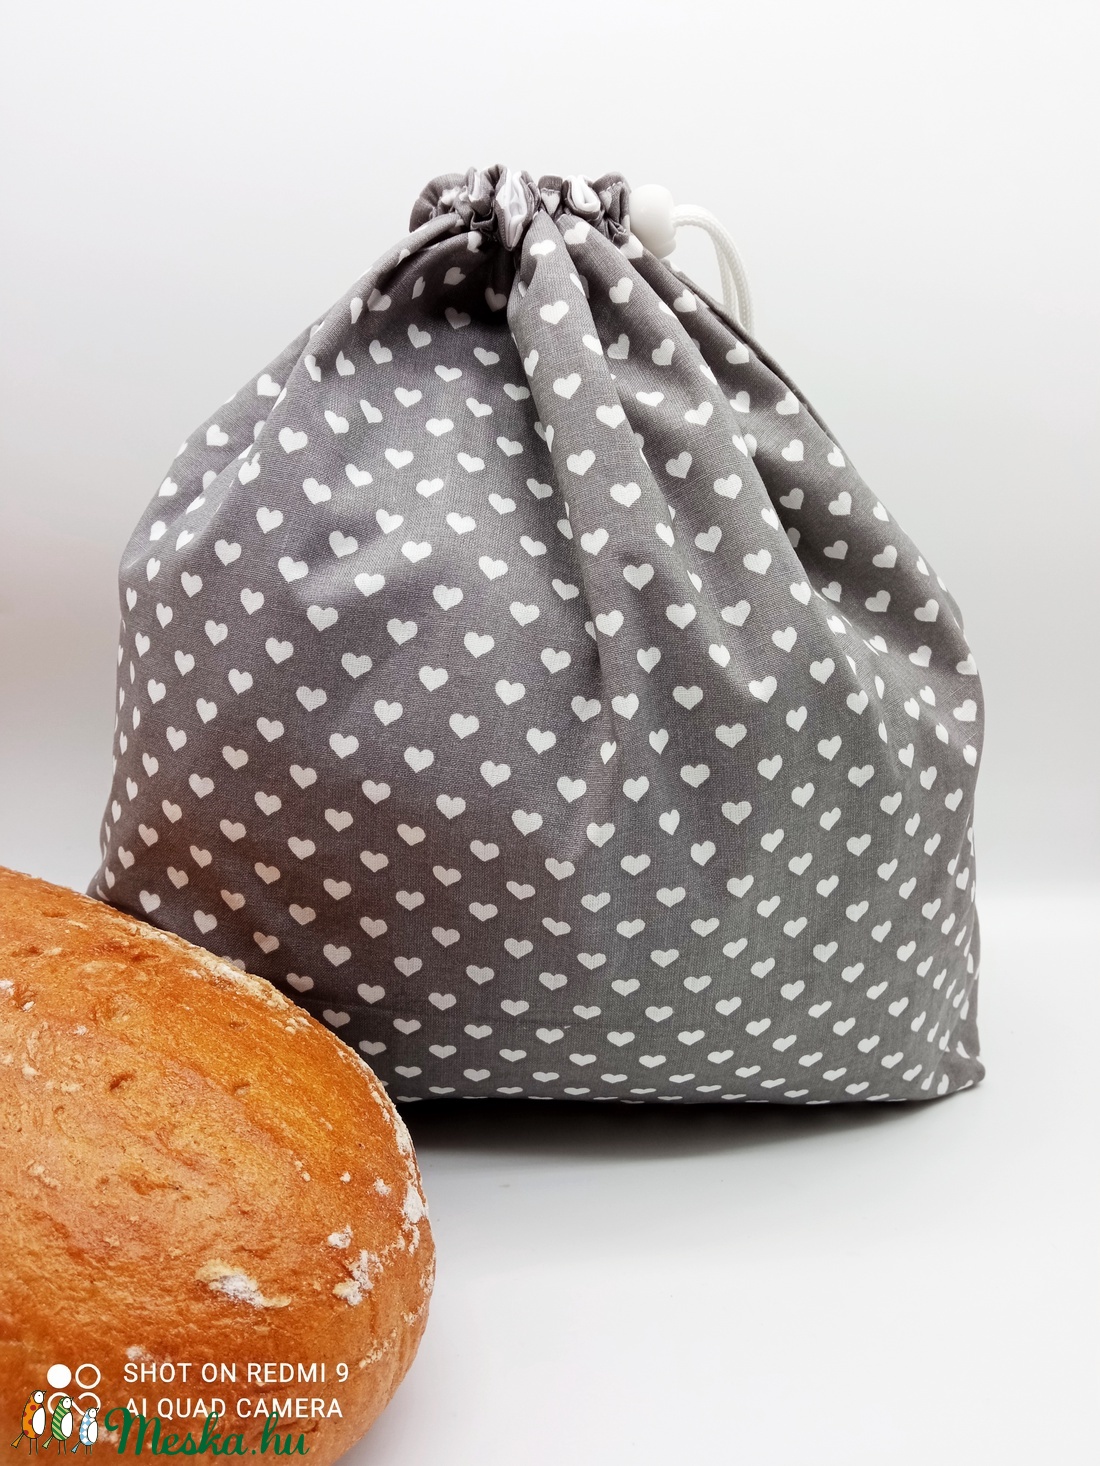 Frissentartó kenyeres zsák - táska & tok - bevásárlás & shopper táska - kenyeres zsák - Meska.hu